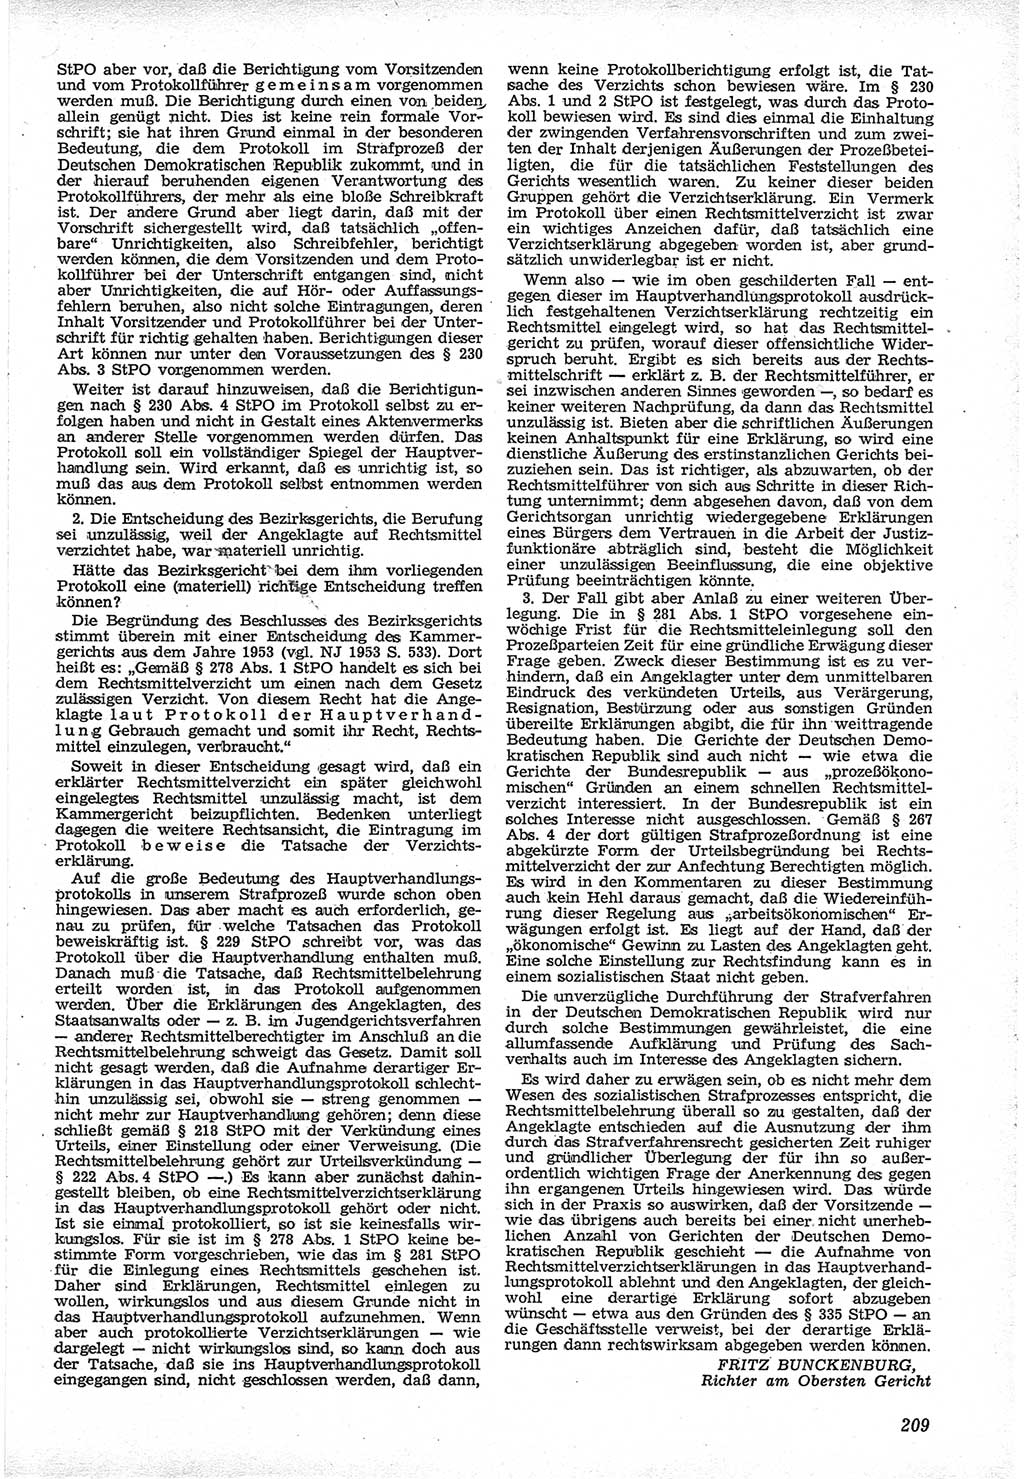 Neue Justiz (NJ), Zeitschrift für Recht und Rechtswissenschaft [Deutsche Demokratische Republik (DDR)], 12. Jahrgang 1958, Seite 209 (NJ DDR 1958, S. 209)